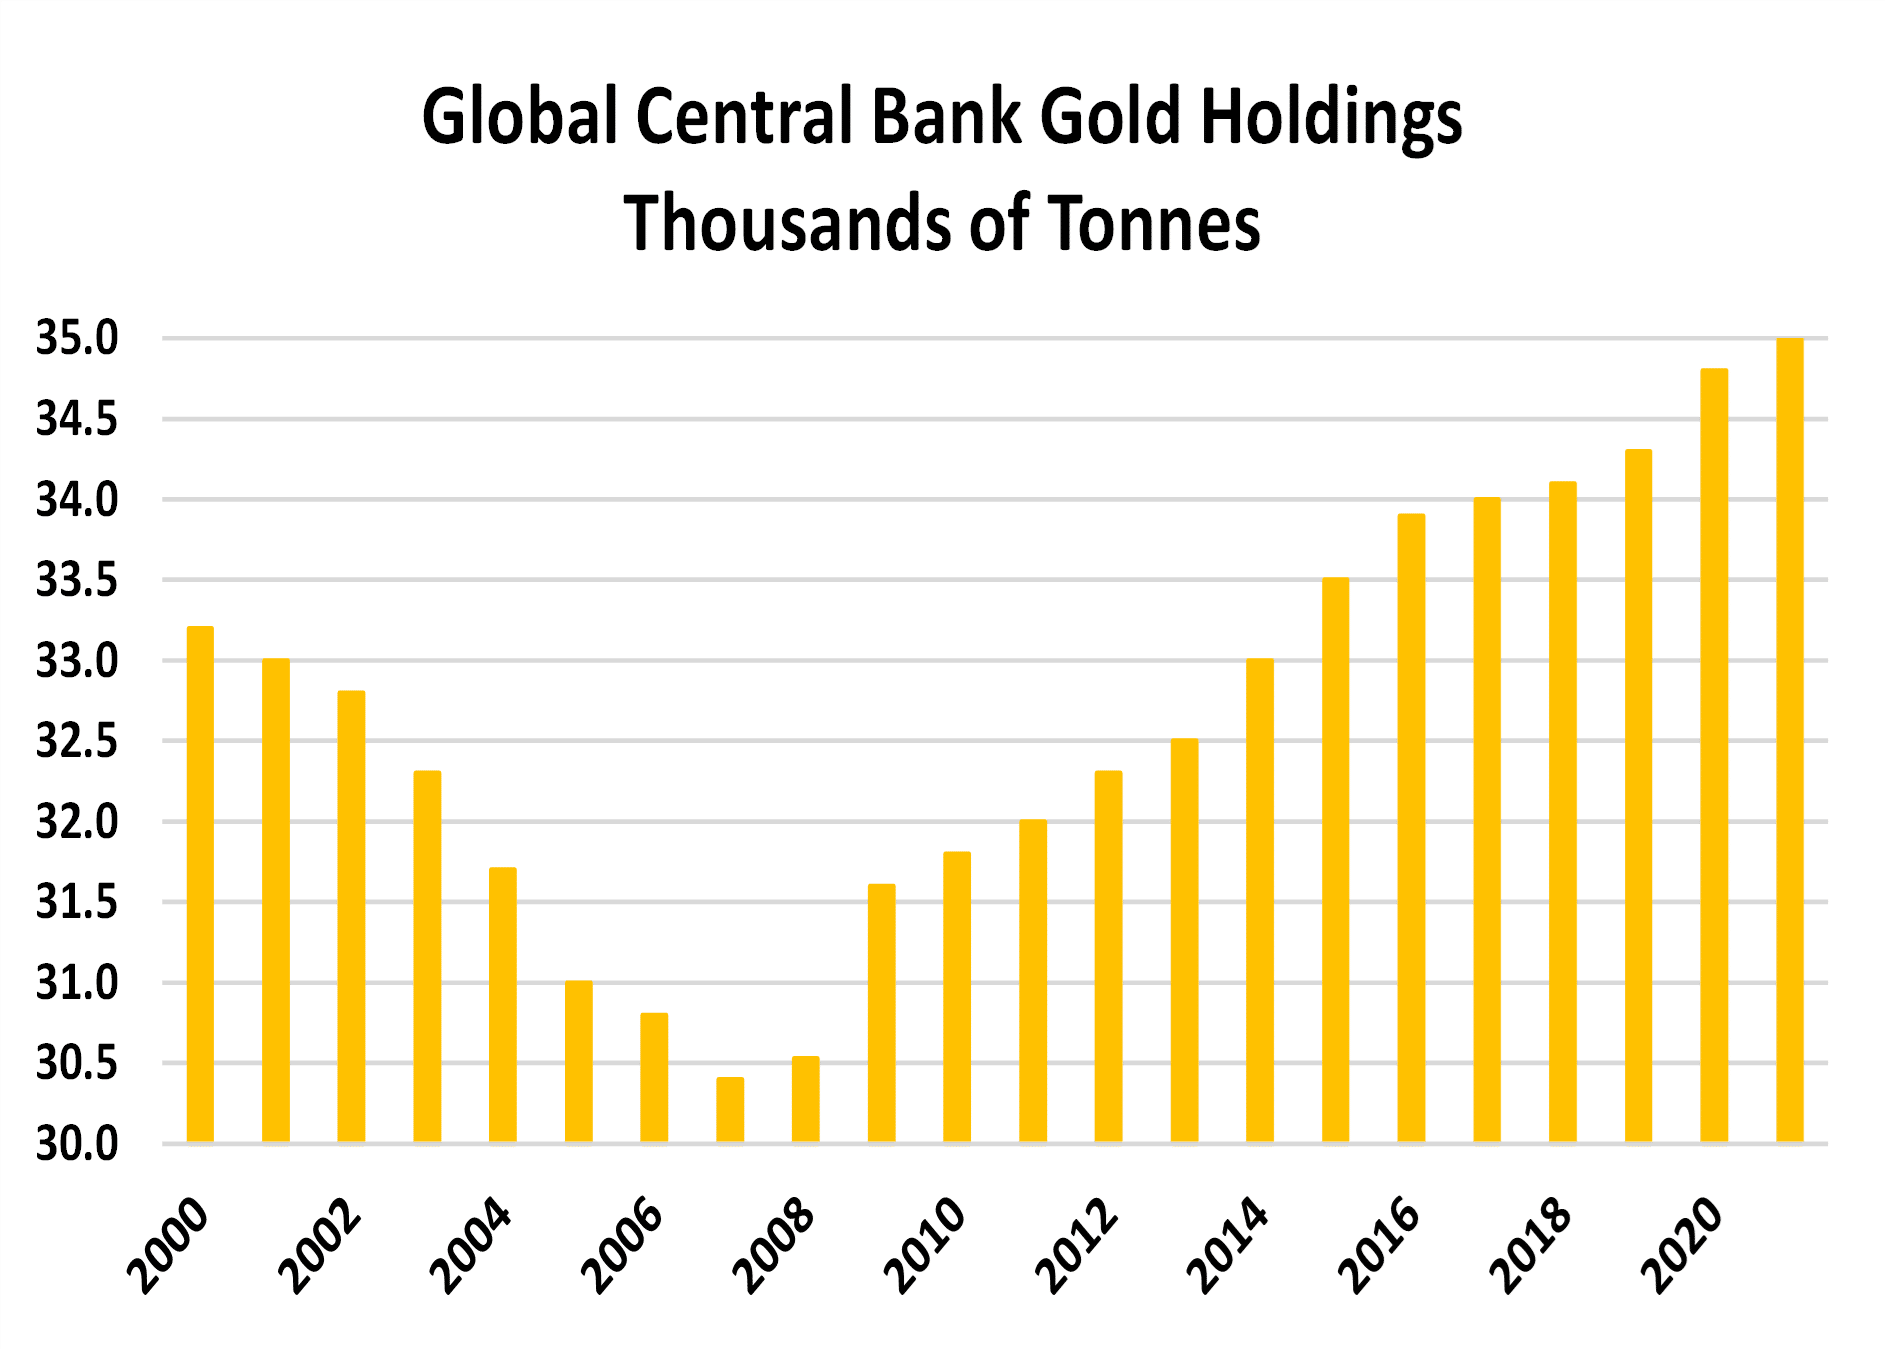 Participações em ouro dos bancos centrais mundiais - Milhares de toneladas